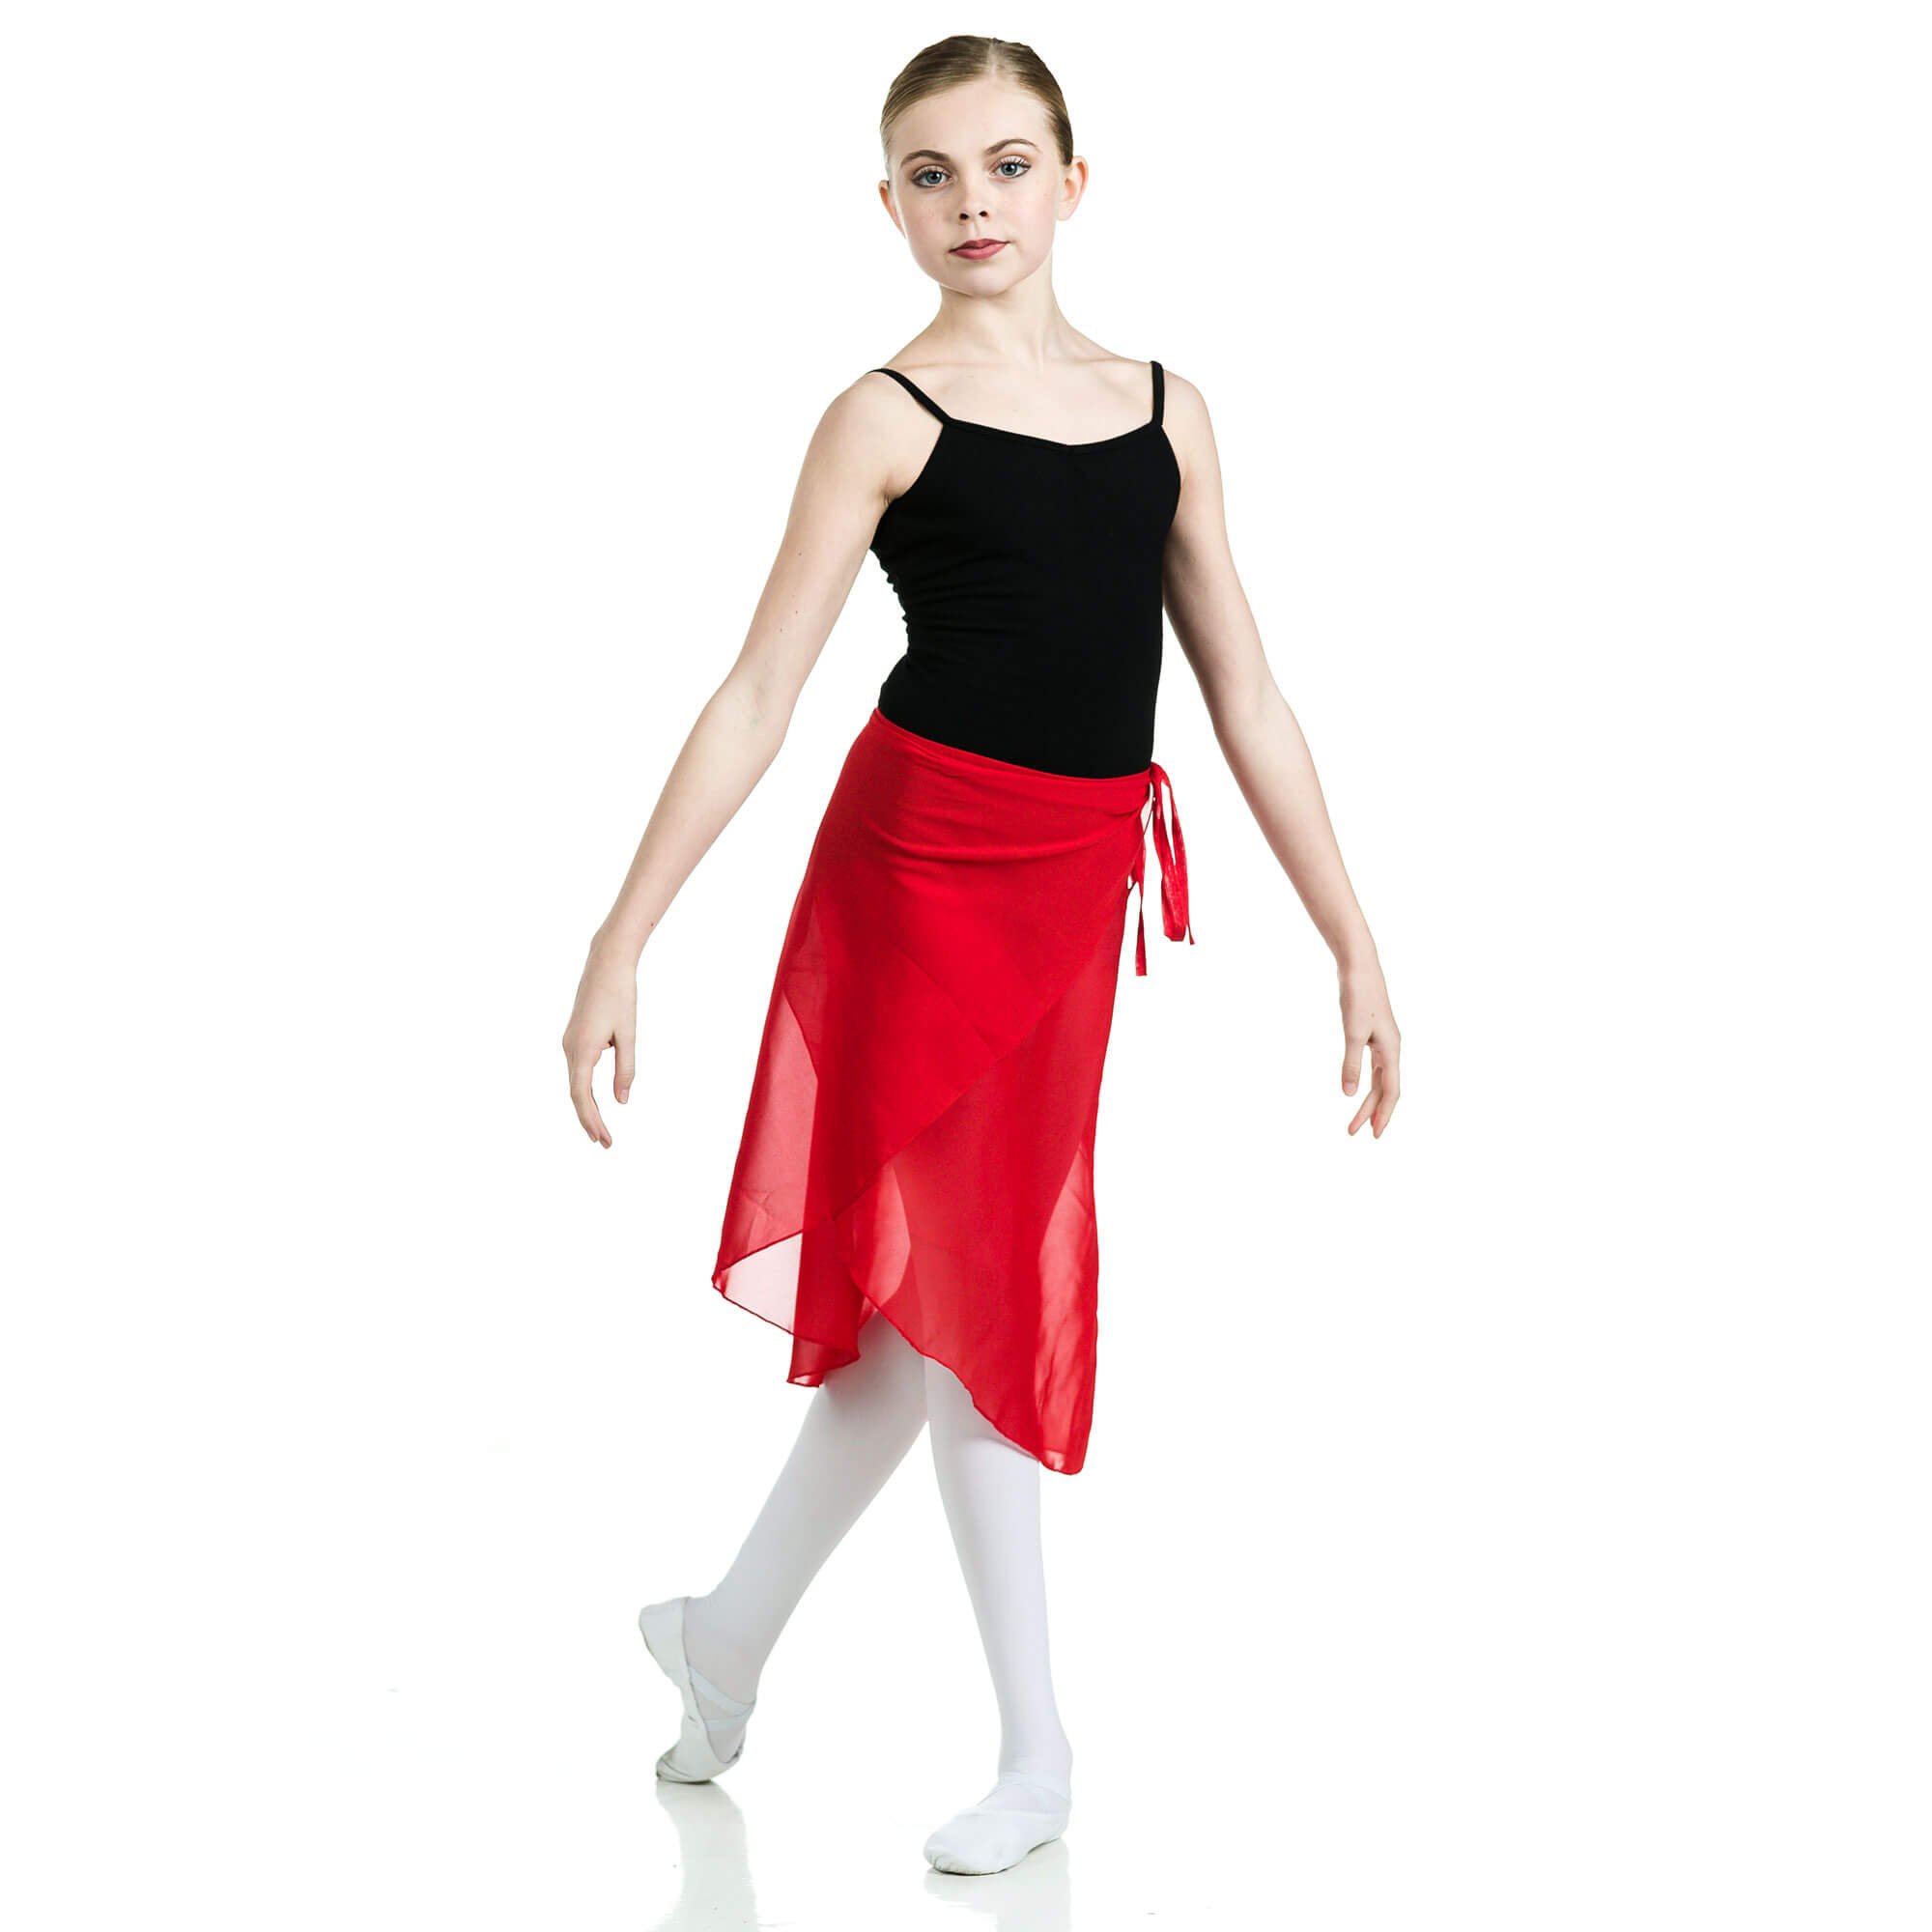 Danzcue Adult Wrap Ballet Dance Skirt [DQSK008] - $16.99